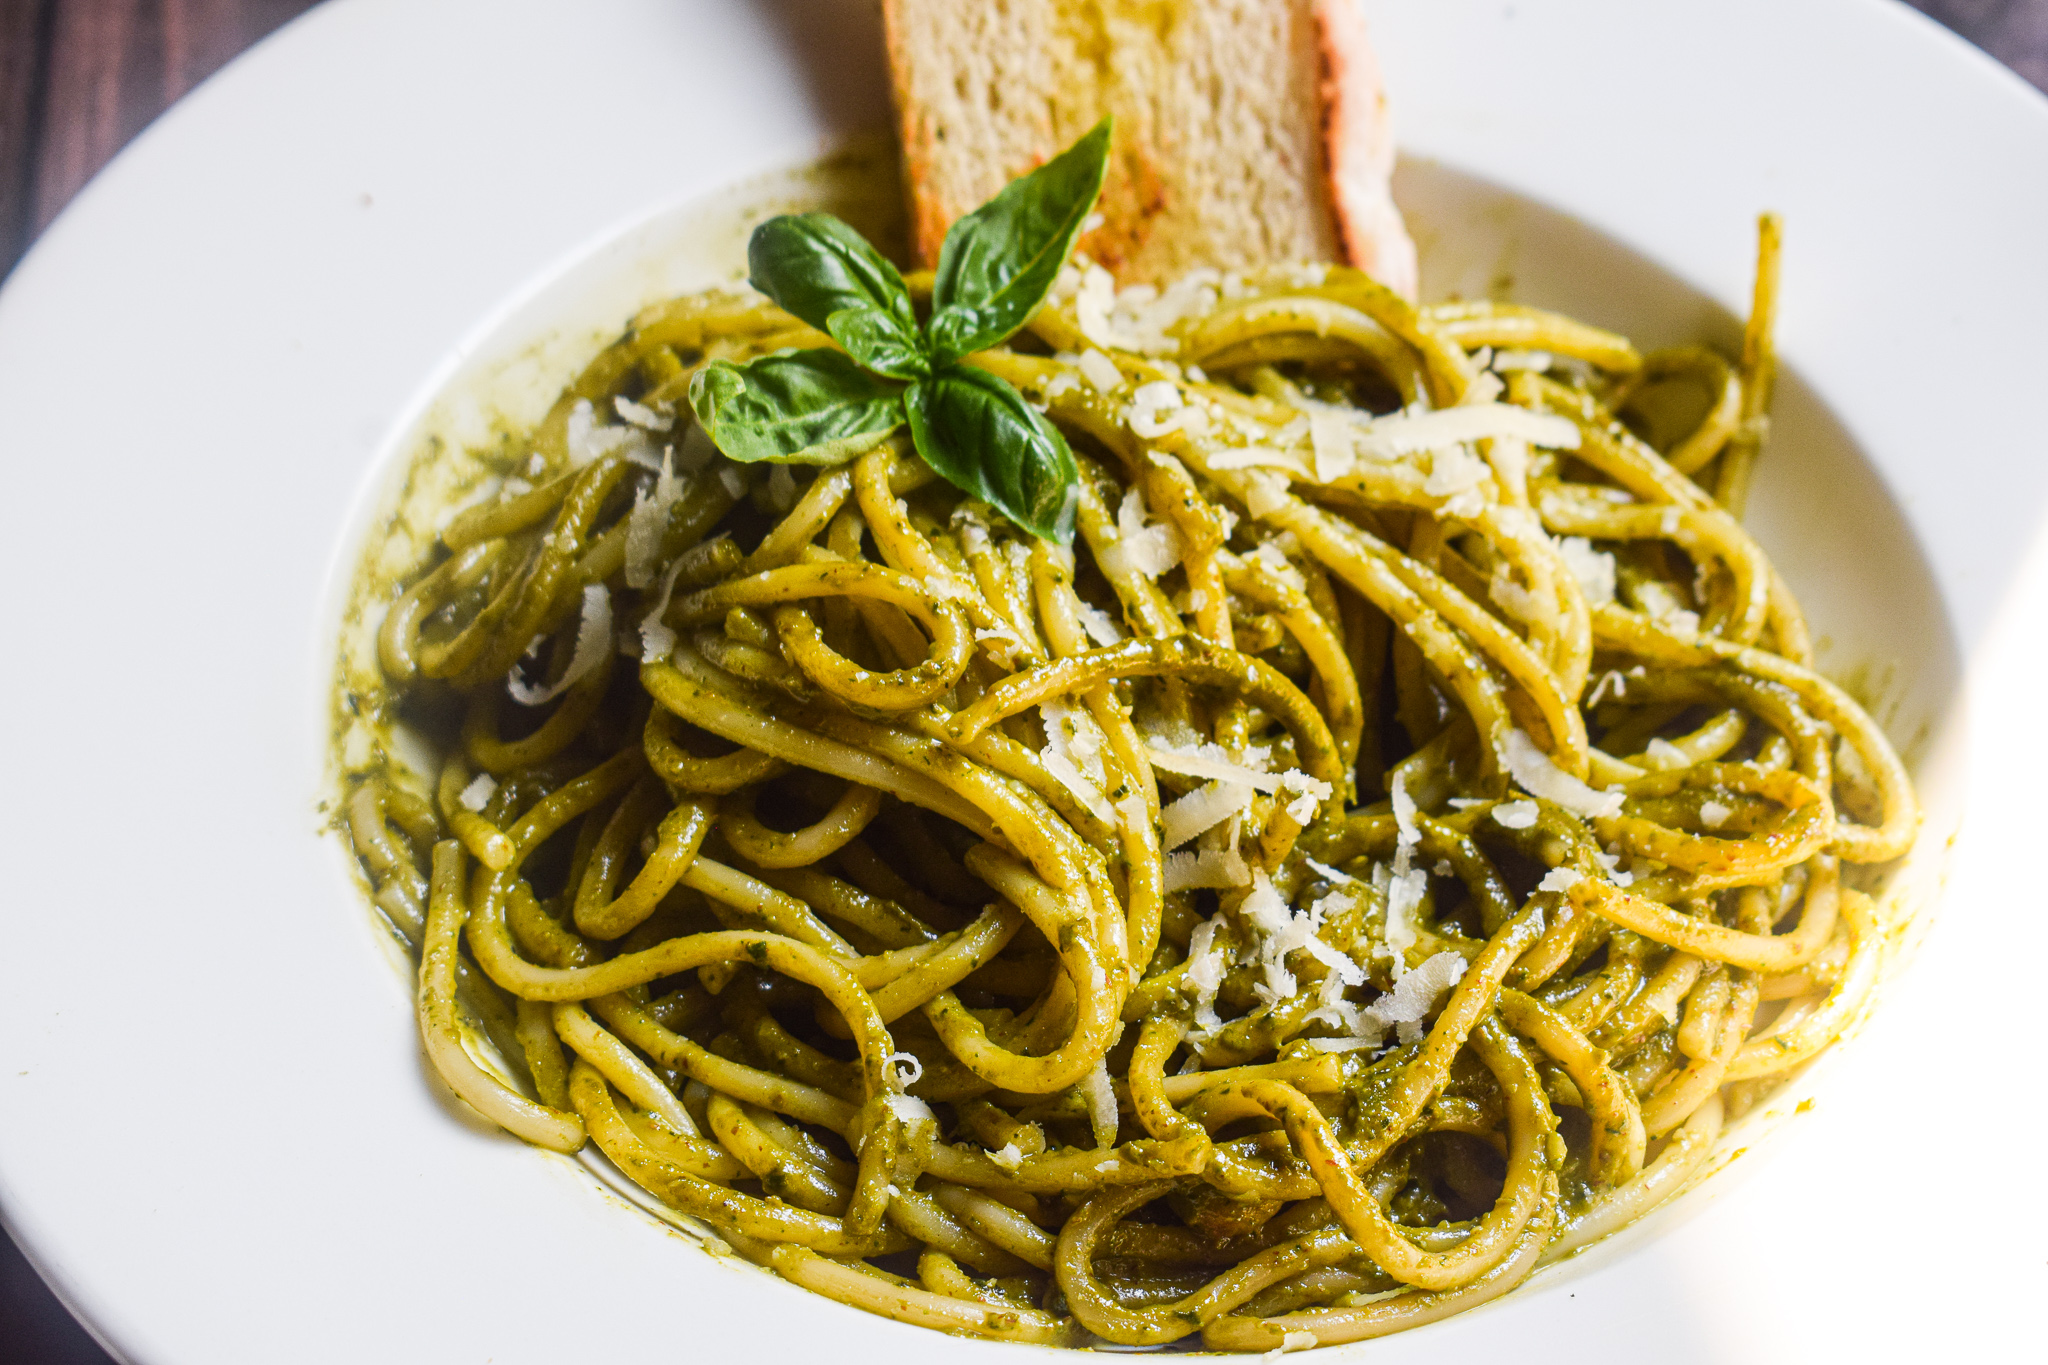 Creamy Pesto Pasta Recipes for the regular homecook